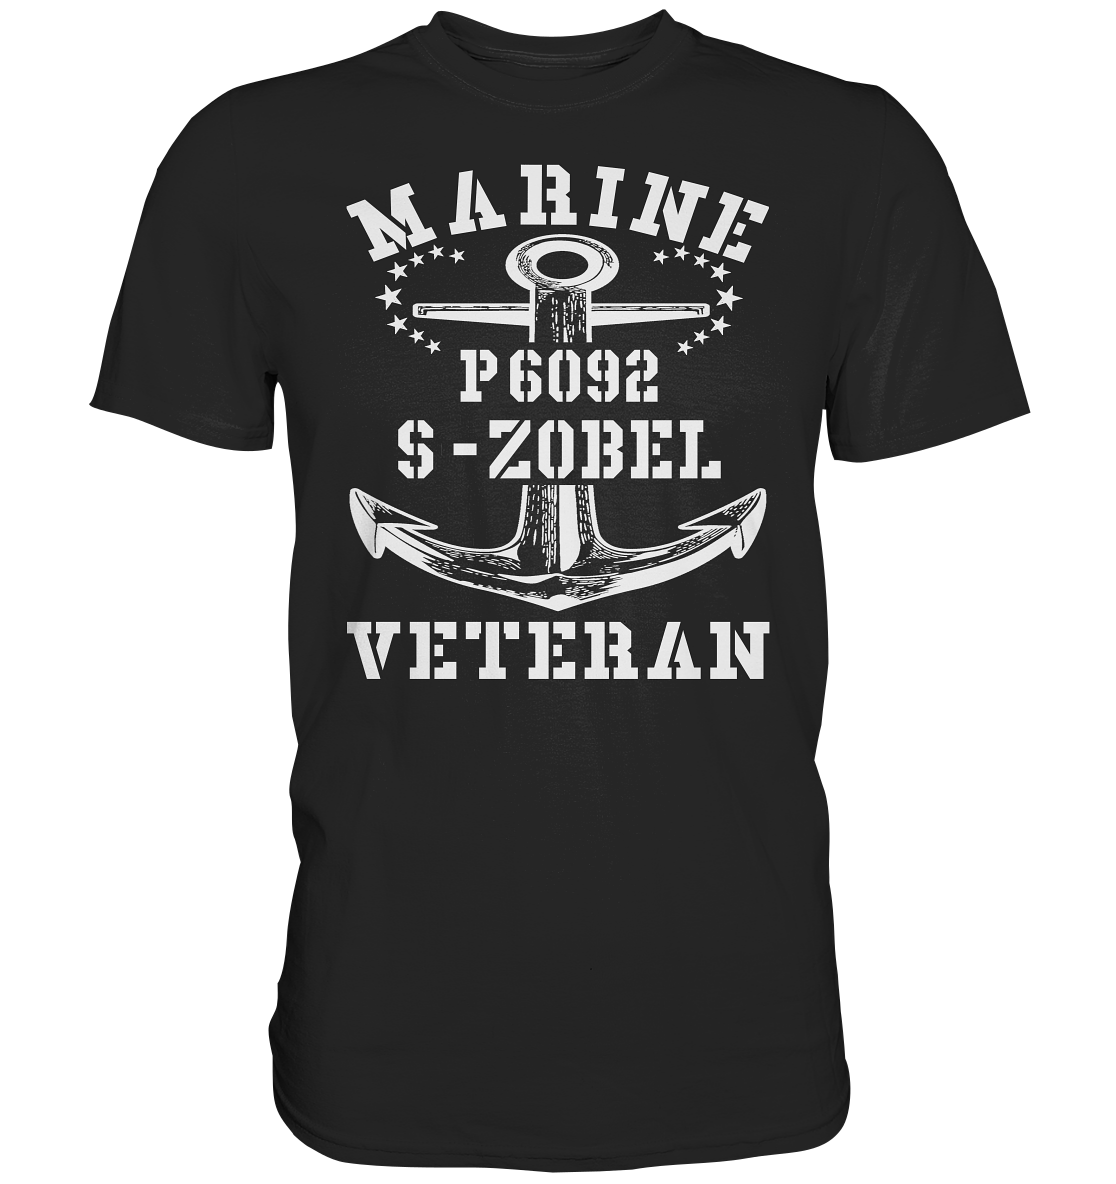 P6092 S-ZOBEL Marine Veteran - Premium Shirt